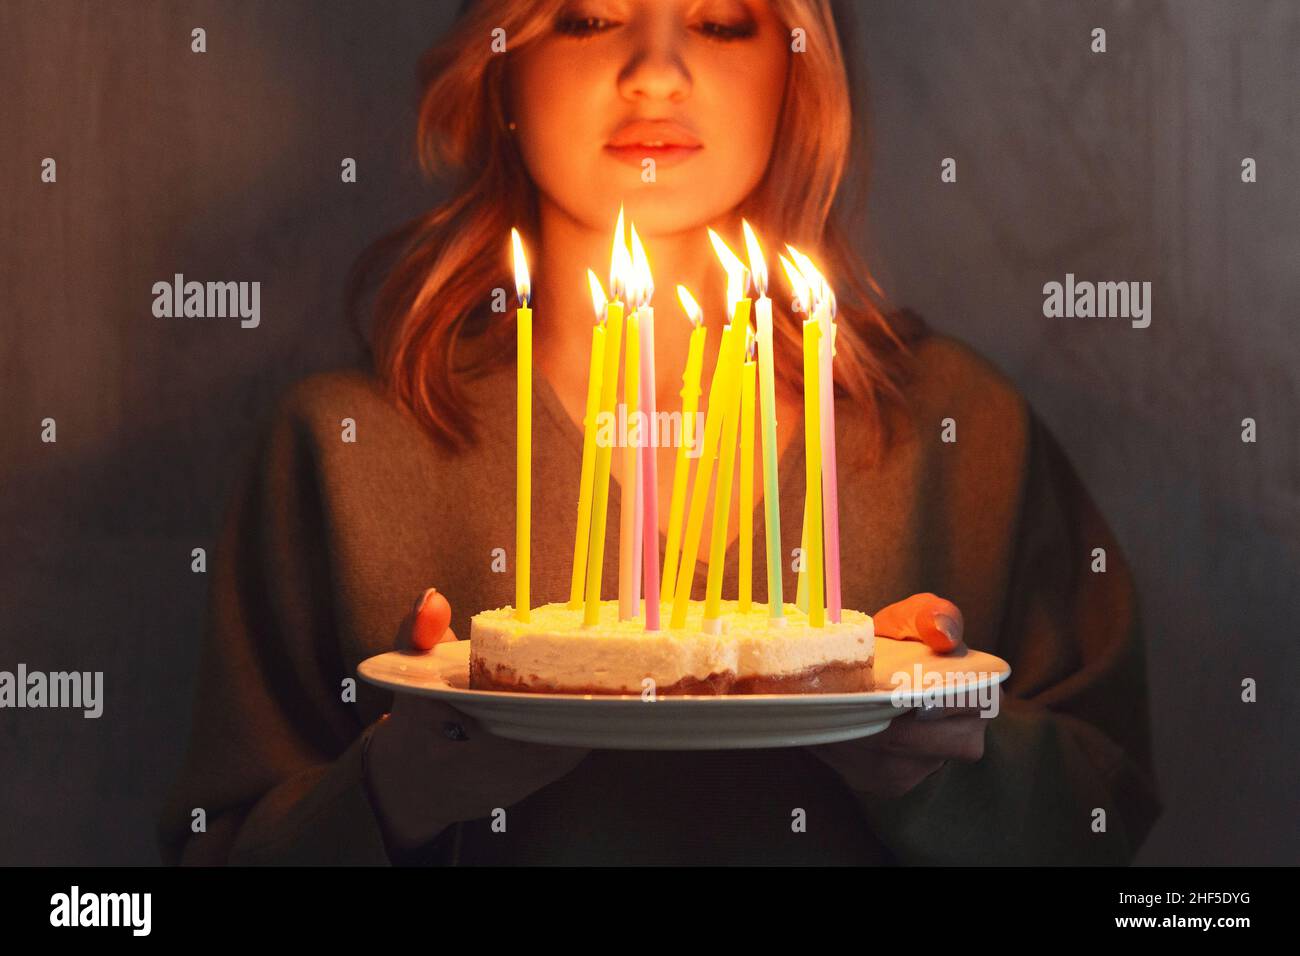 Jeune femme souriante tenant un gâteau d'anniversaire maison avec des bougies allumées à l'intérieur, vue latérale.Une femme apporte une tarte aux jours.Anniversaire traditio Banque D'Images